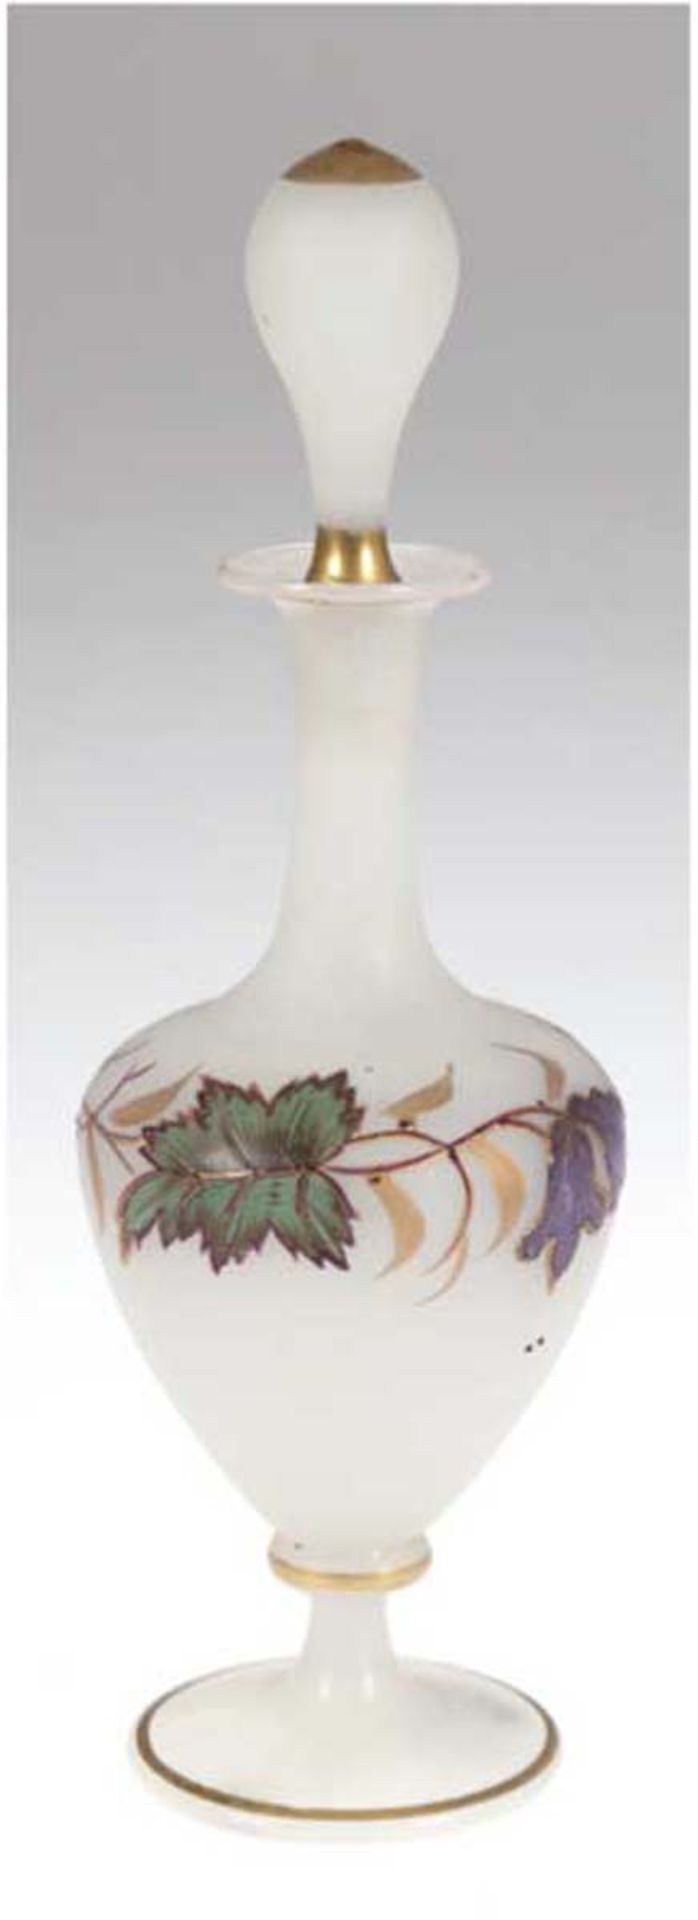 Biedermeier-Flakon, Alabasterglas, stark gebauchter Korpus mit umlaufender Floralmalereiauf